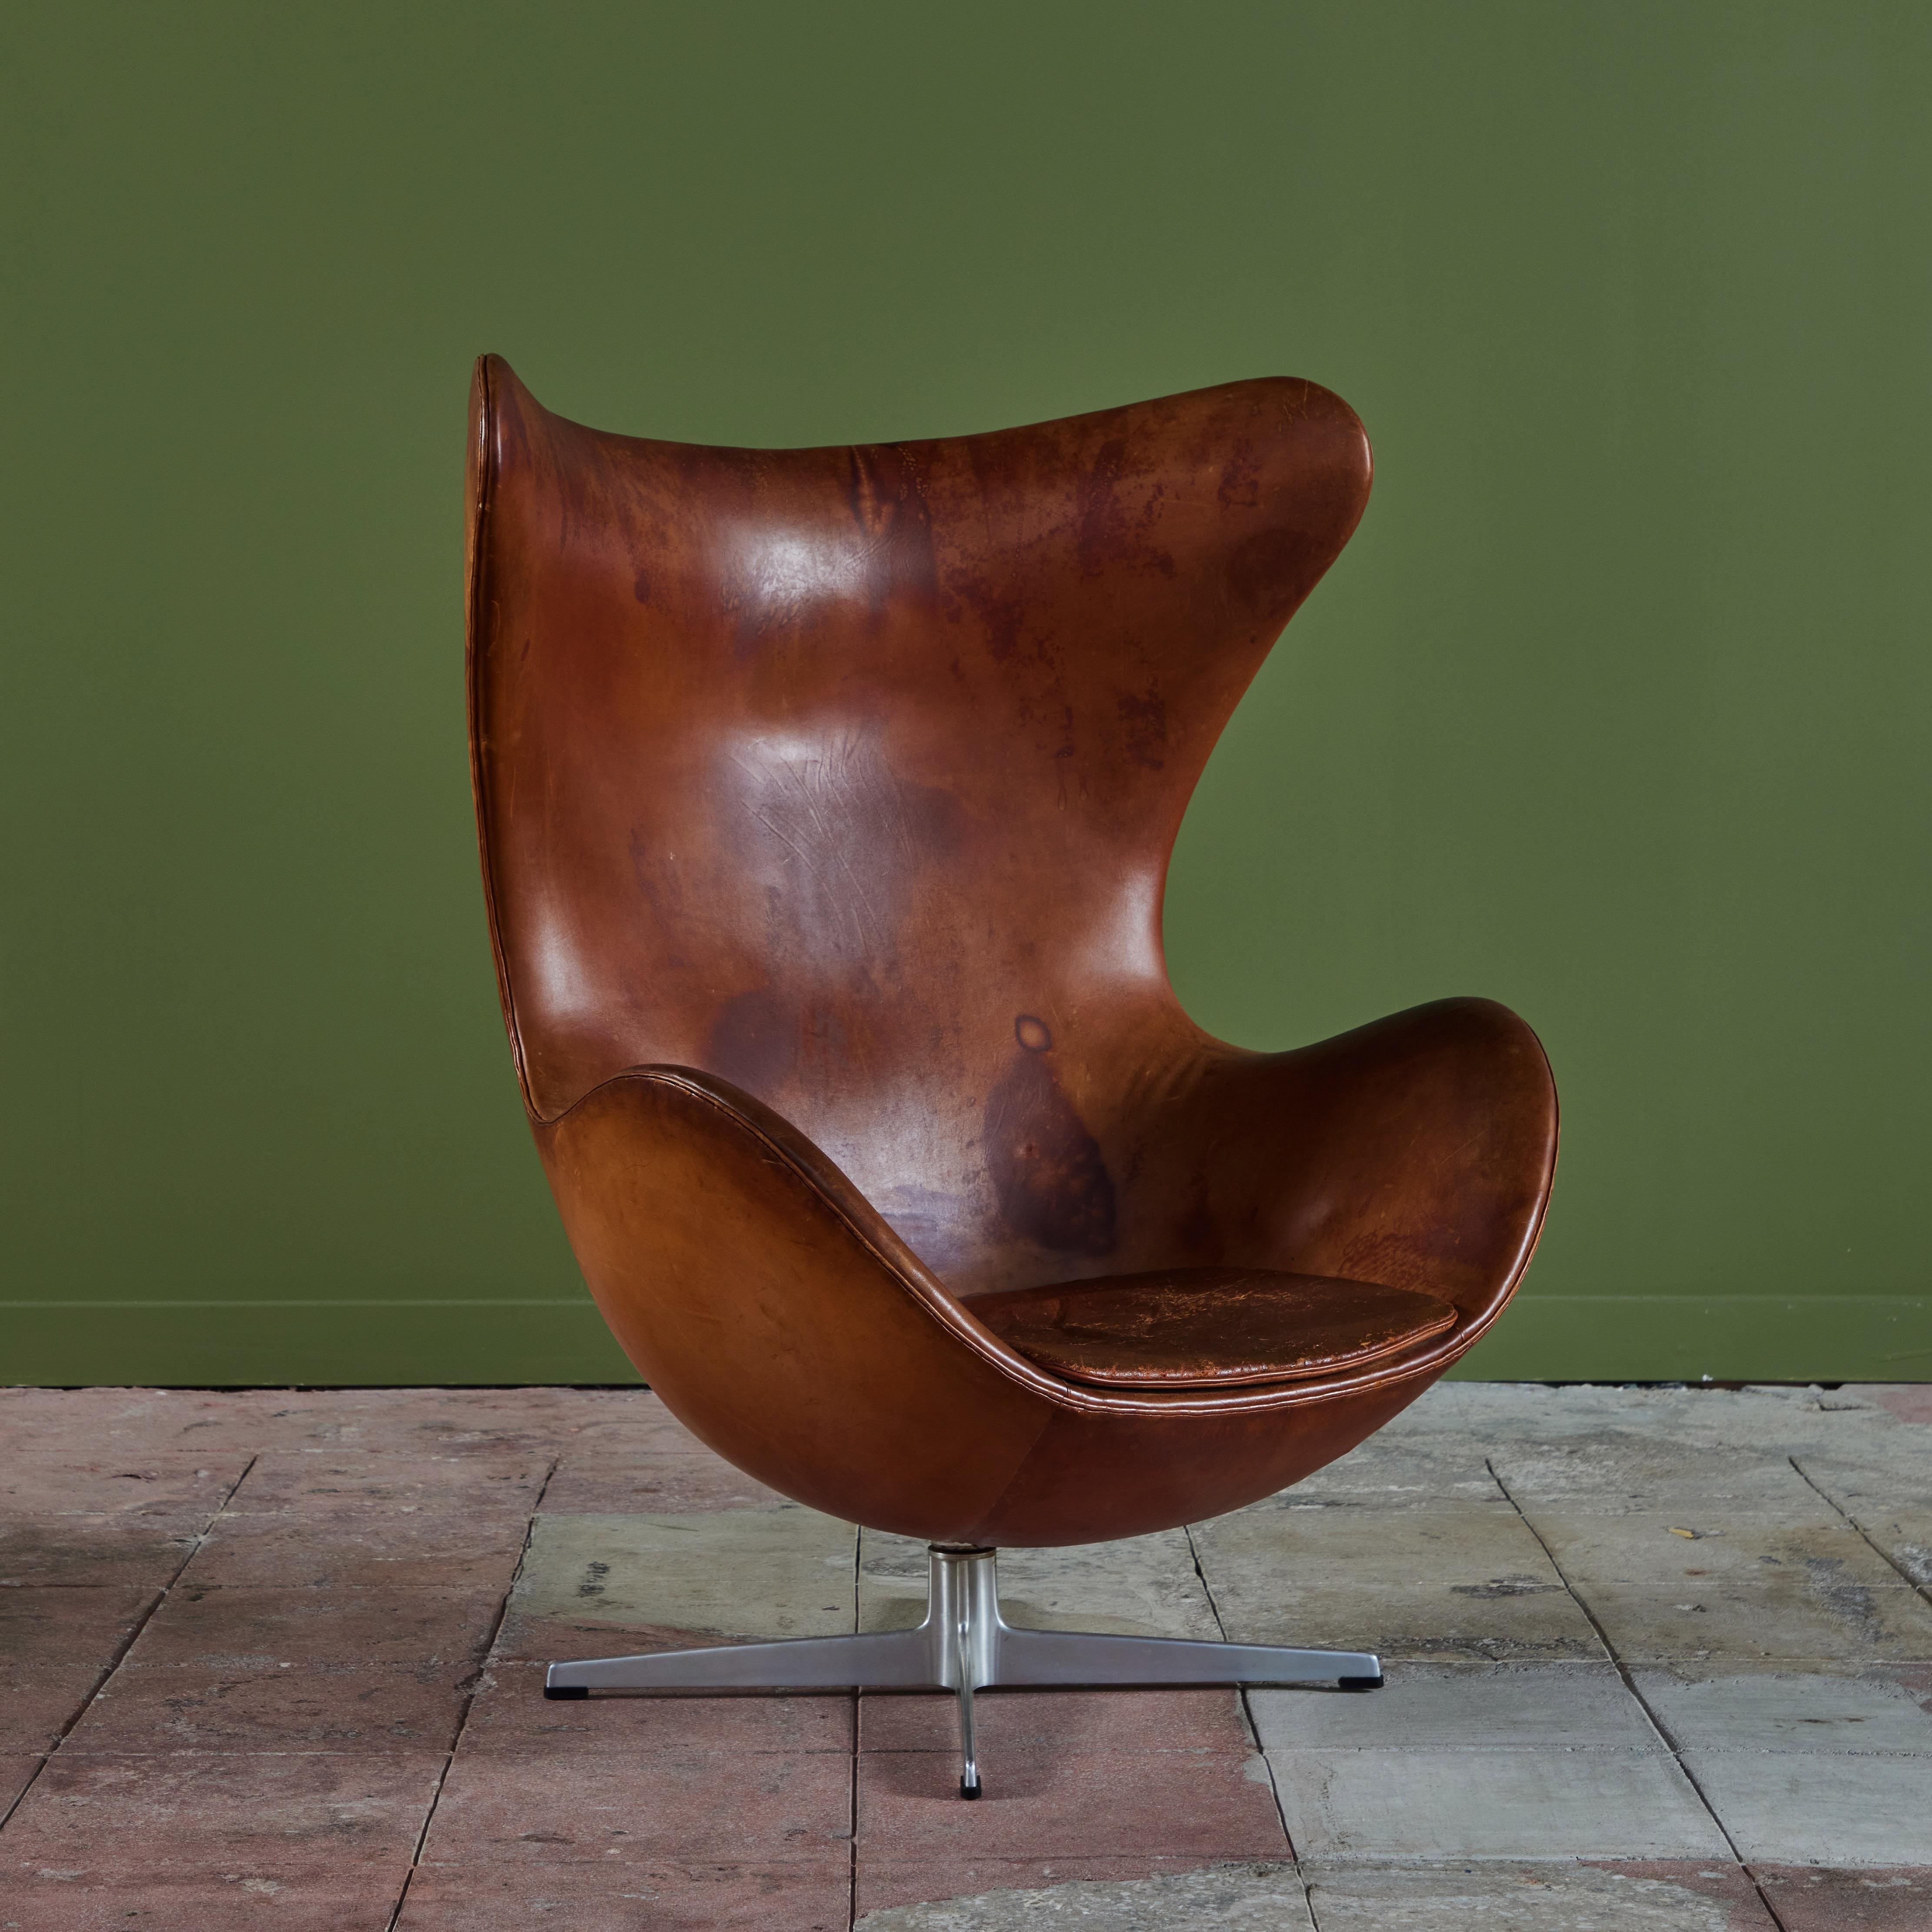 L'emblématique fauteuil à œufs conçu par Arne Jacobsen, C.C.1960, Danemark. Le fauteuil est doté d'un cuir d'origine de couleur selle riche et d'une patine distinctive. La chaise à dossier haut est dotée d'un coussin d'assise et pivote à 360° sur